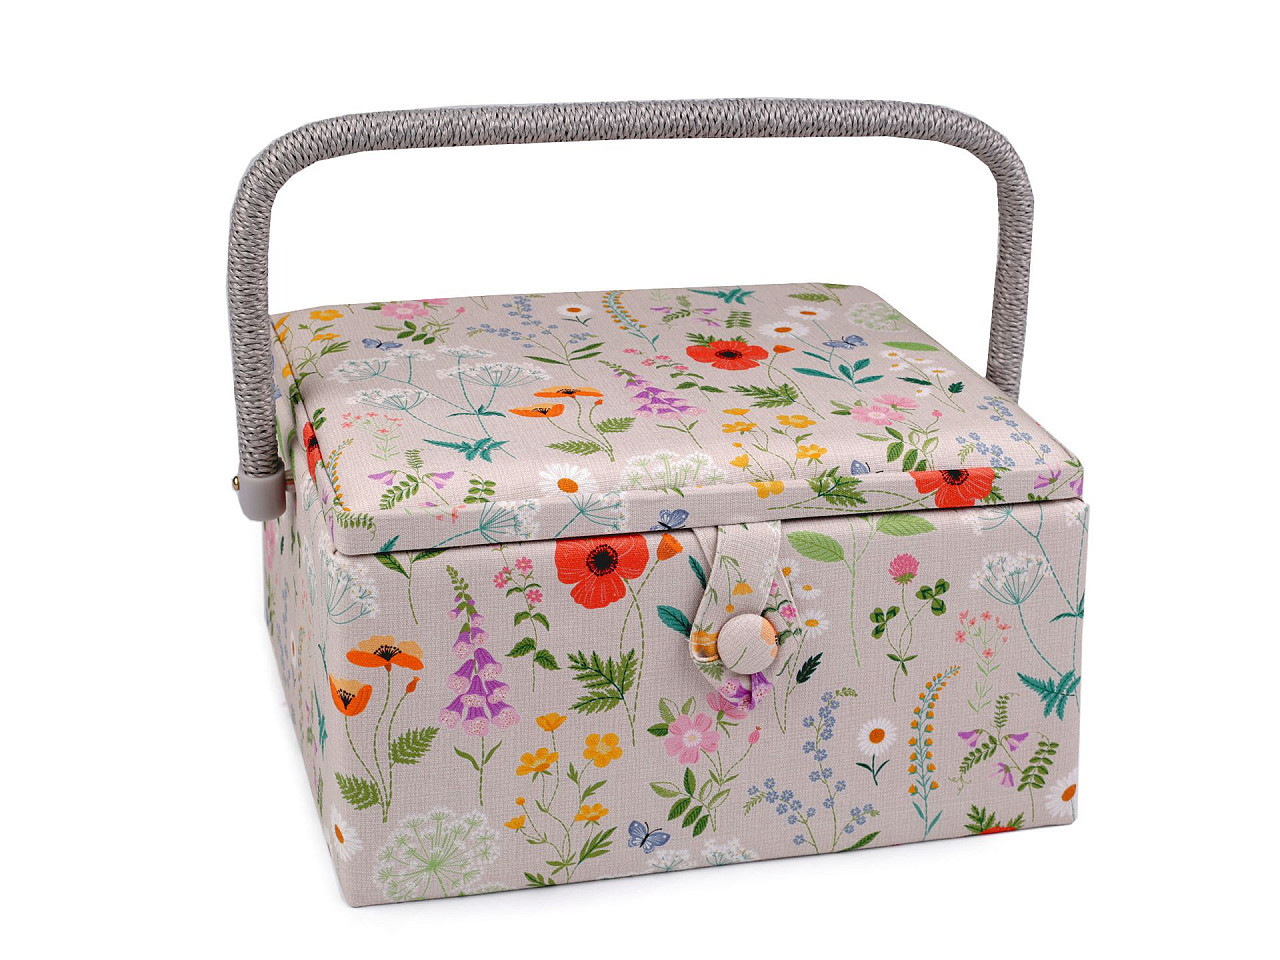 Kazeta / košík na šití čalouněný luční květy, barva režná